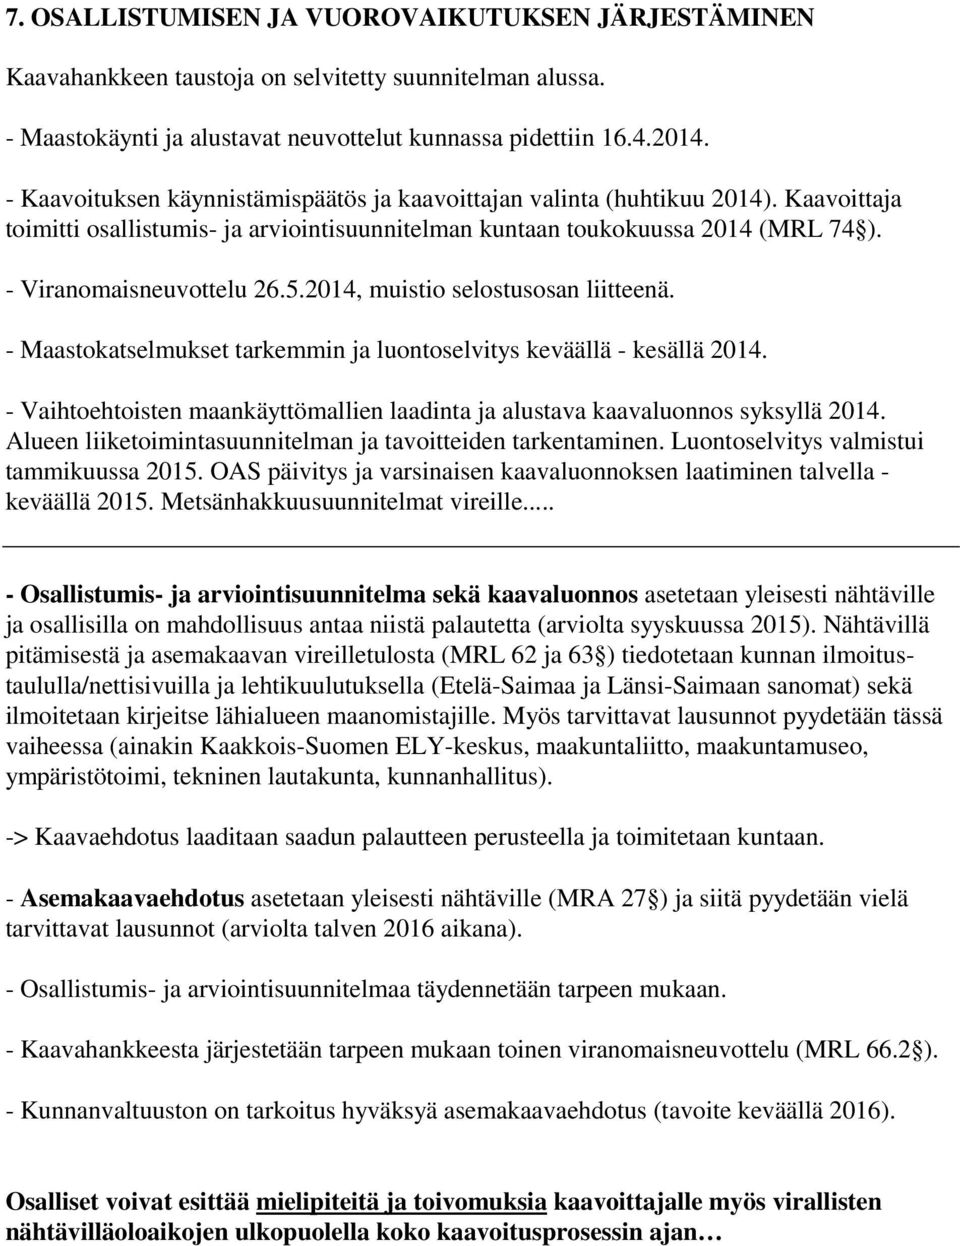 2014, muistio selostusosan liitteenä. - Maastokatselmukset tarkemmin ja luontoselvitys keväällä - kesällä 2014. - Vaihtoehtoisten maankäyttömallien laadinta ja alustava kaavaluonnos syksyllä 2014.